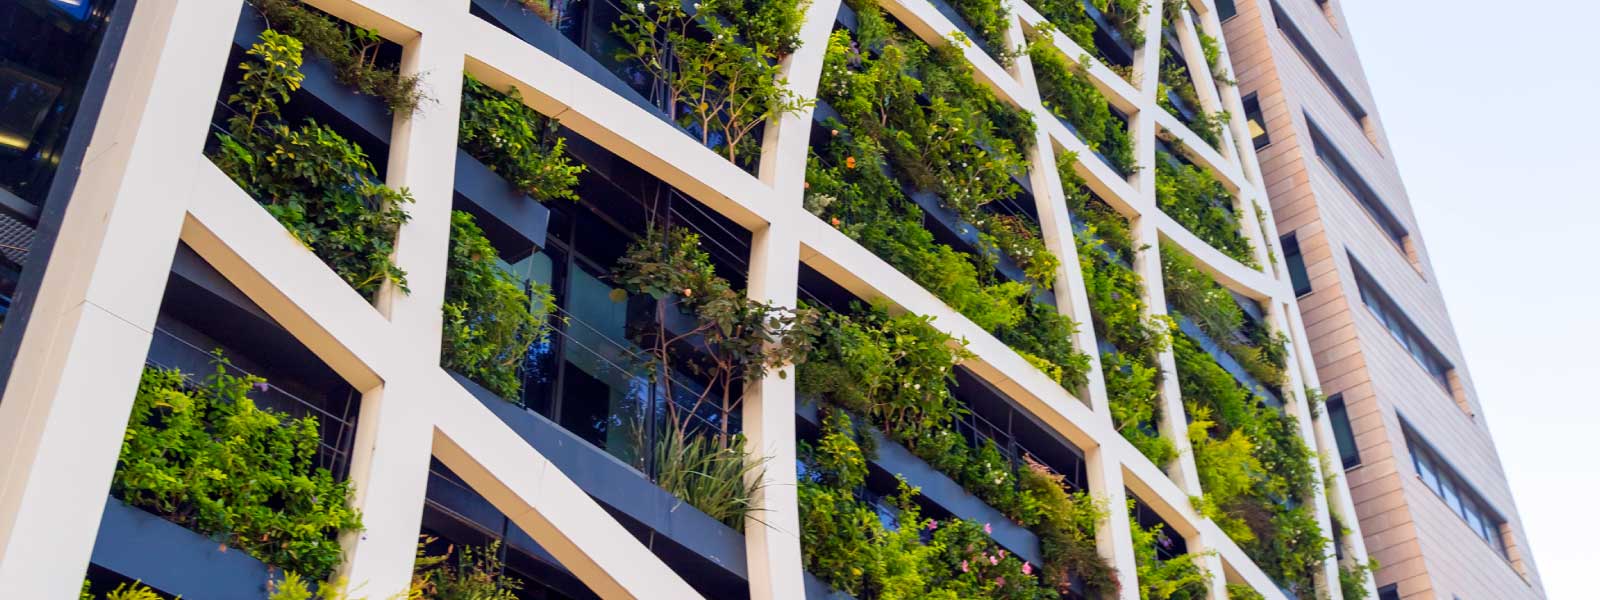 eco-friendly urban architecture